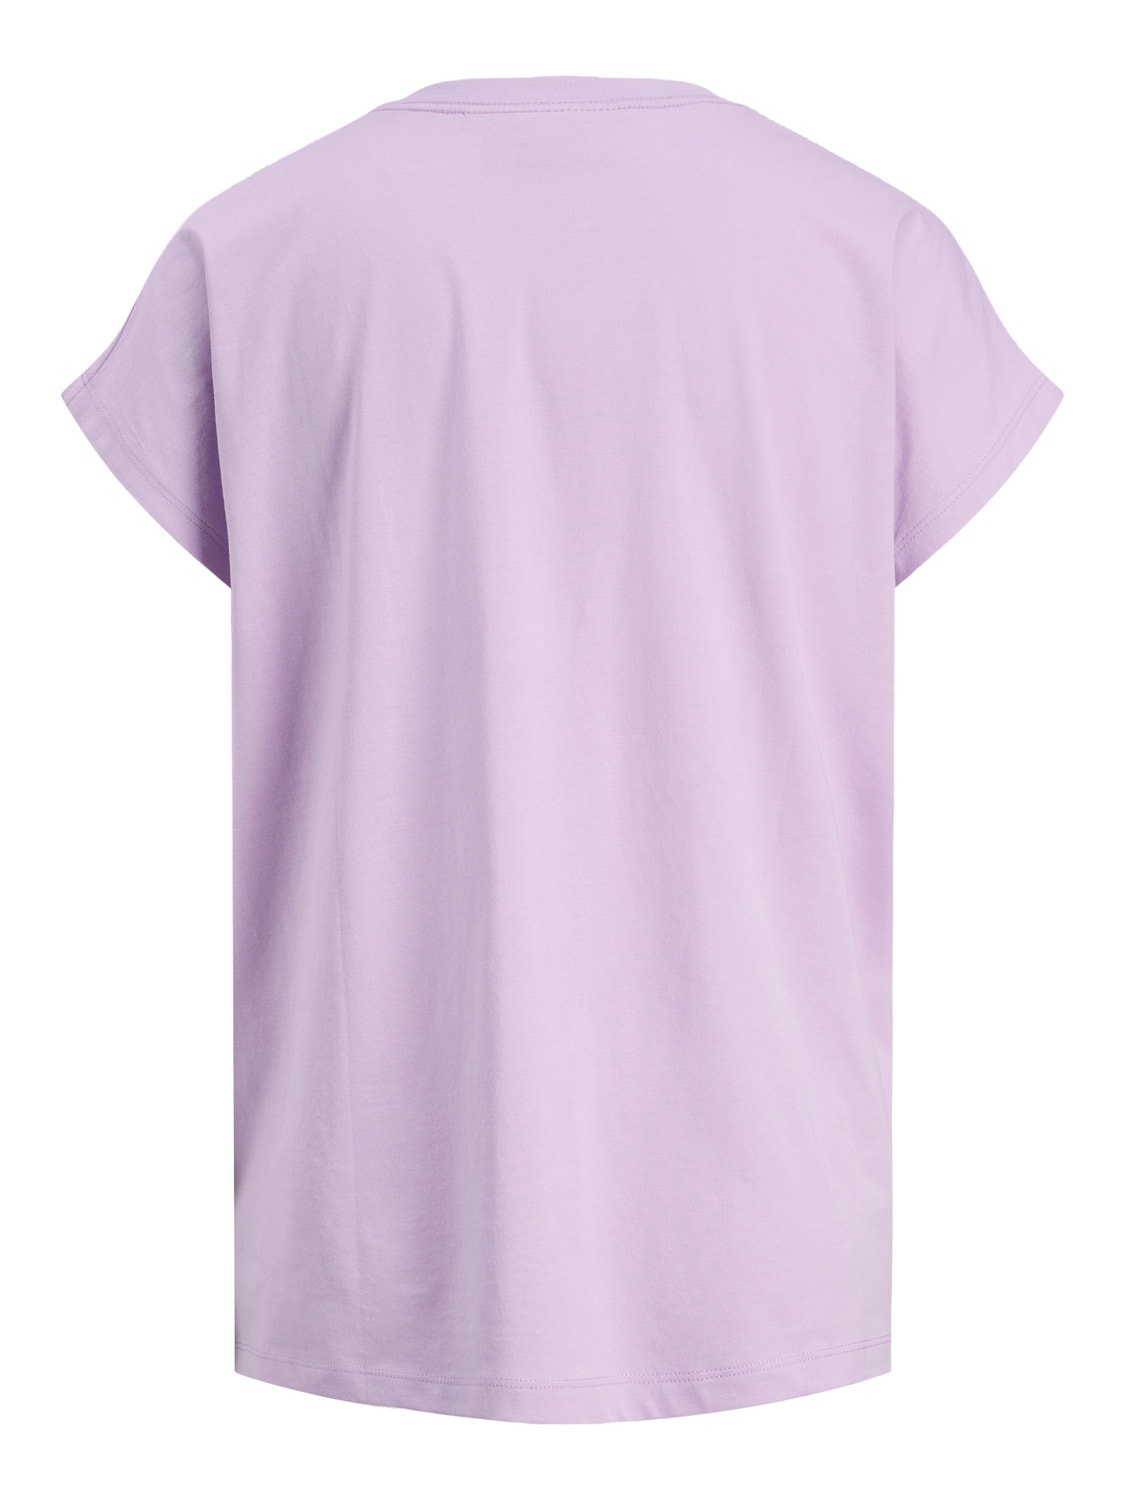 JJXX JXASTRID T-shirt -Pastel Lilac - 12200190